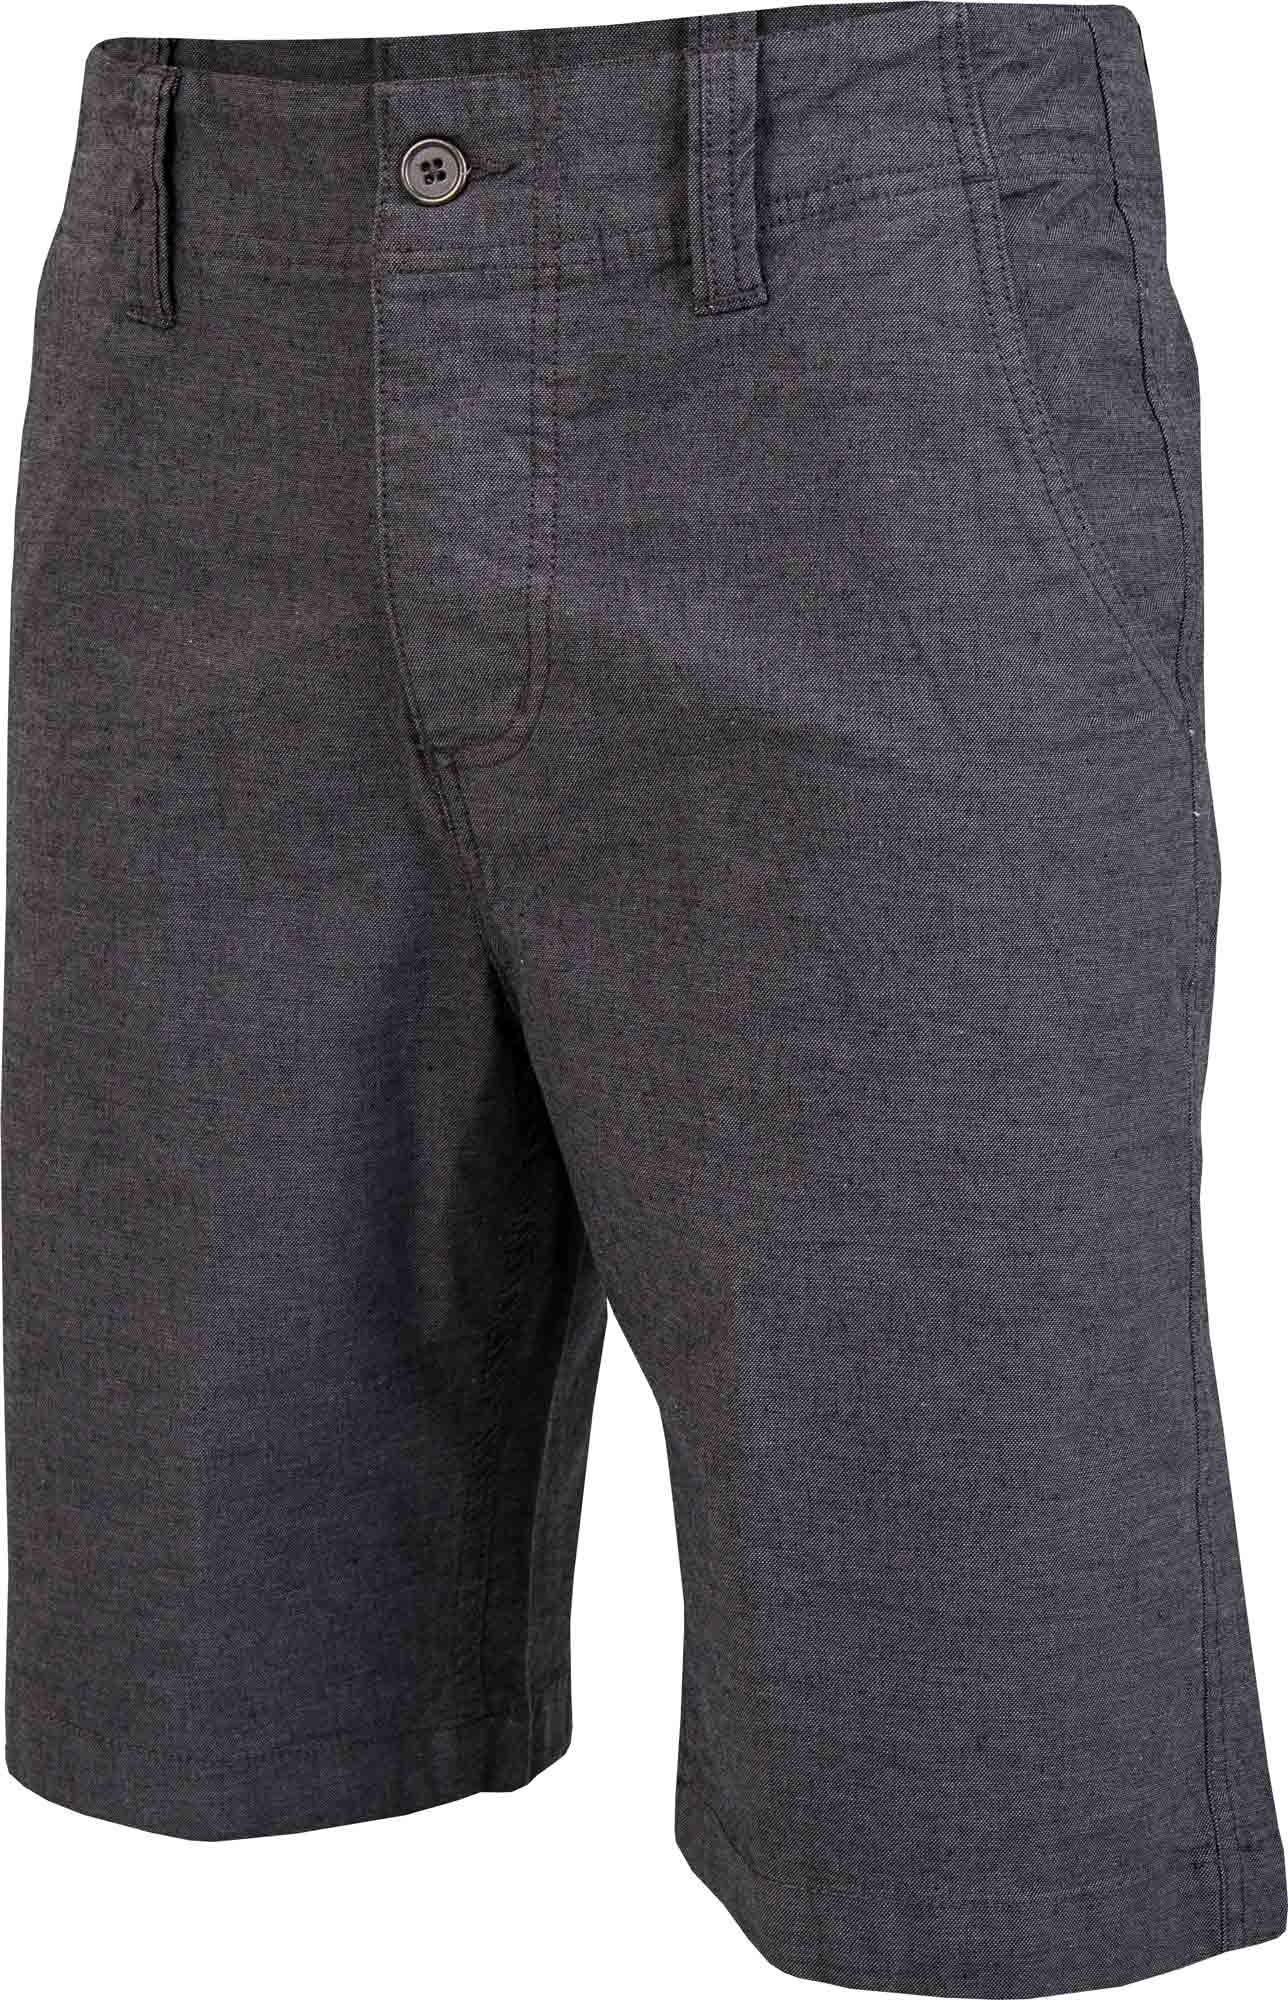 Pantaloni scurţi bărbaţi